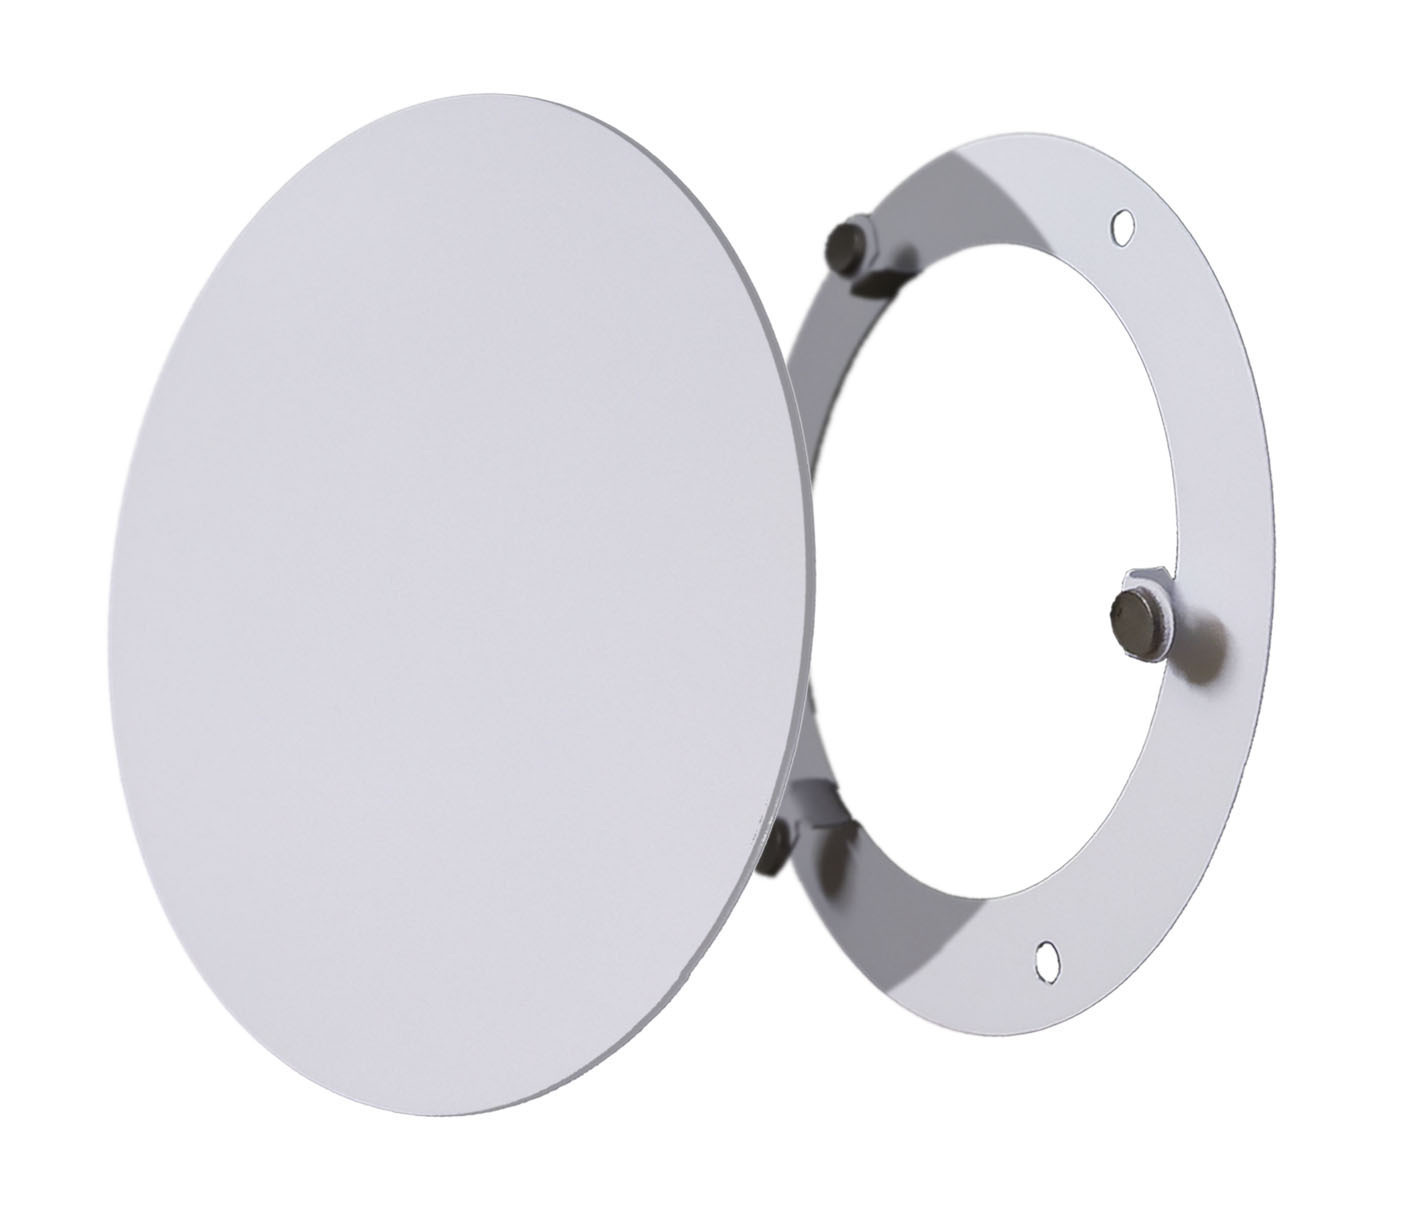 Решетка ВИЗИОНЕР стальная на магнитах круглая РДК-160 белая решетка визионер стальная на магнитах круглая рдк 160 белая